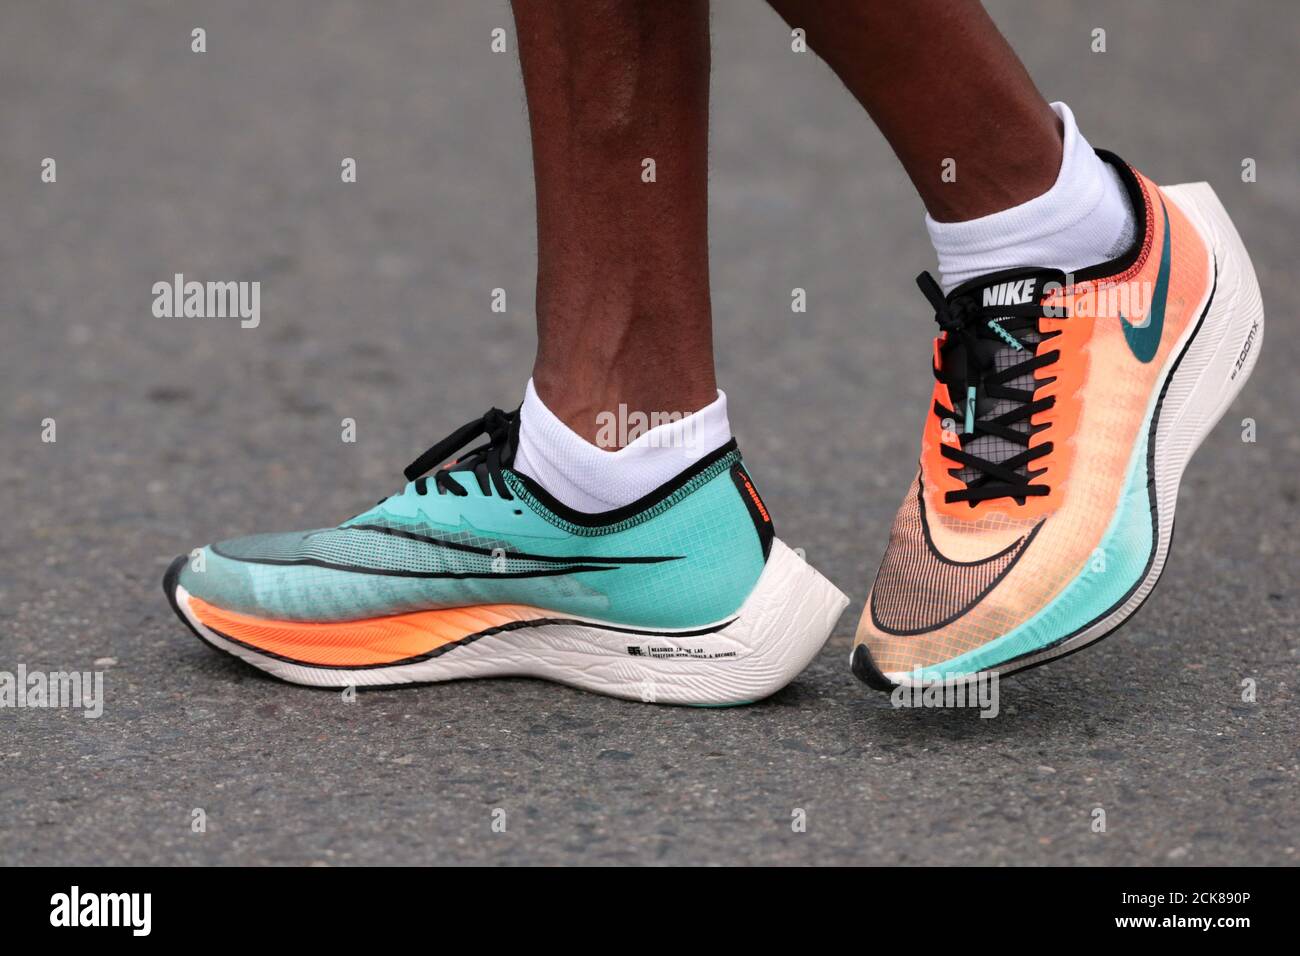 Atletismo - Maratón de Dubai - Dubai, Emiratos Árabes Unidos - 24 de enero de 2020 Vista de un atleta que lleva los zapatos Nike Vaporfly REUTERS/Christopher Pike Fotografía de stock - Alamy